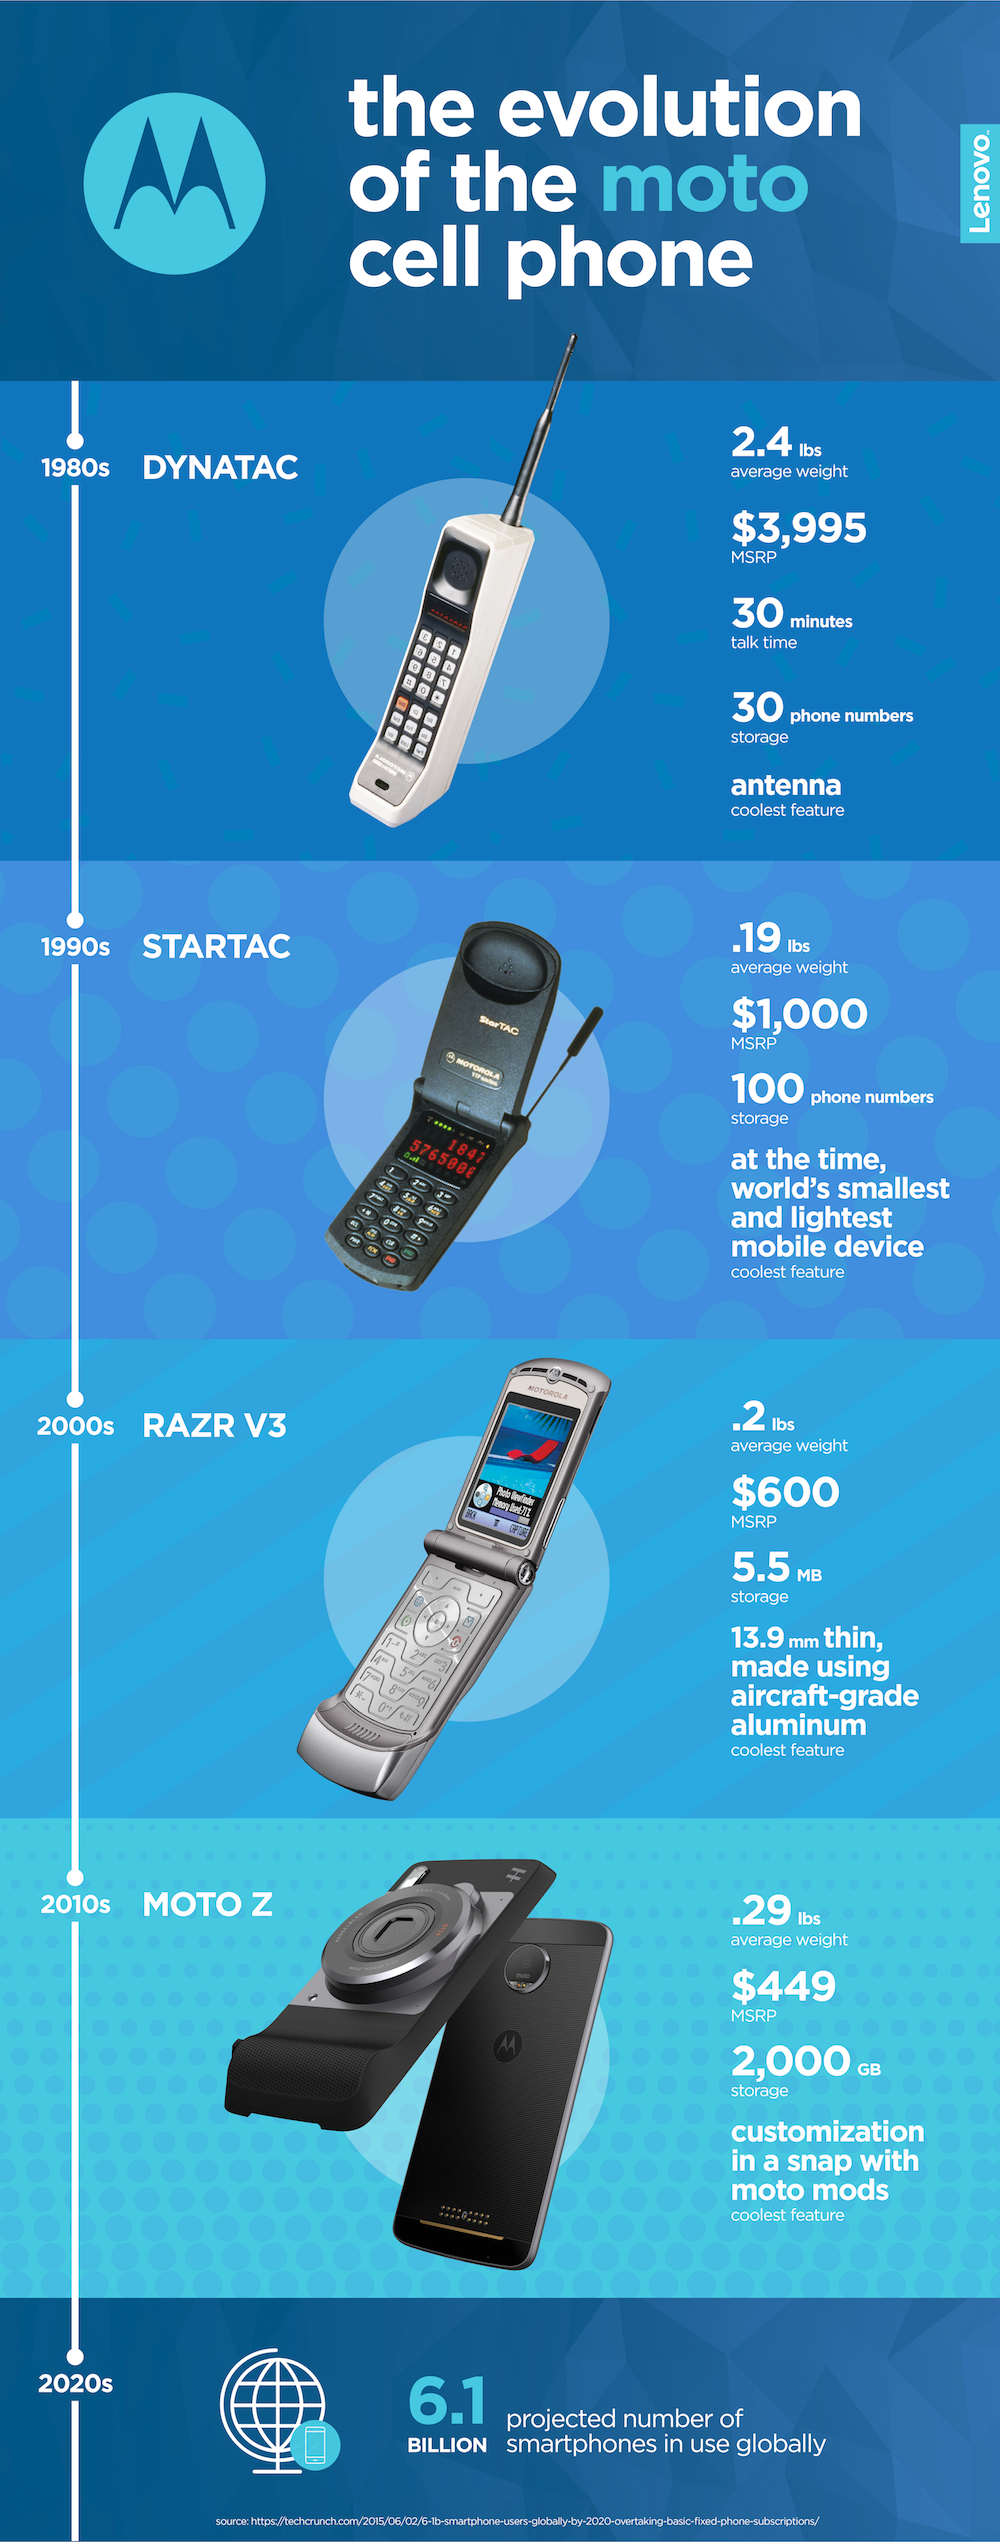 Há 44 anos atrás, a fabricante Motorola demonstrava o "primeiro celular" da História